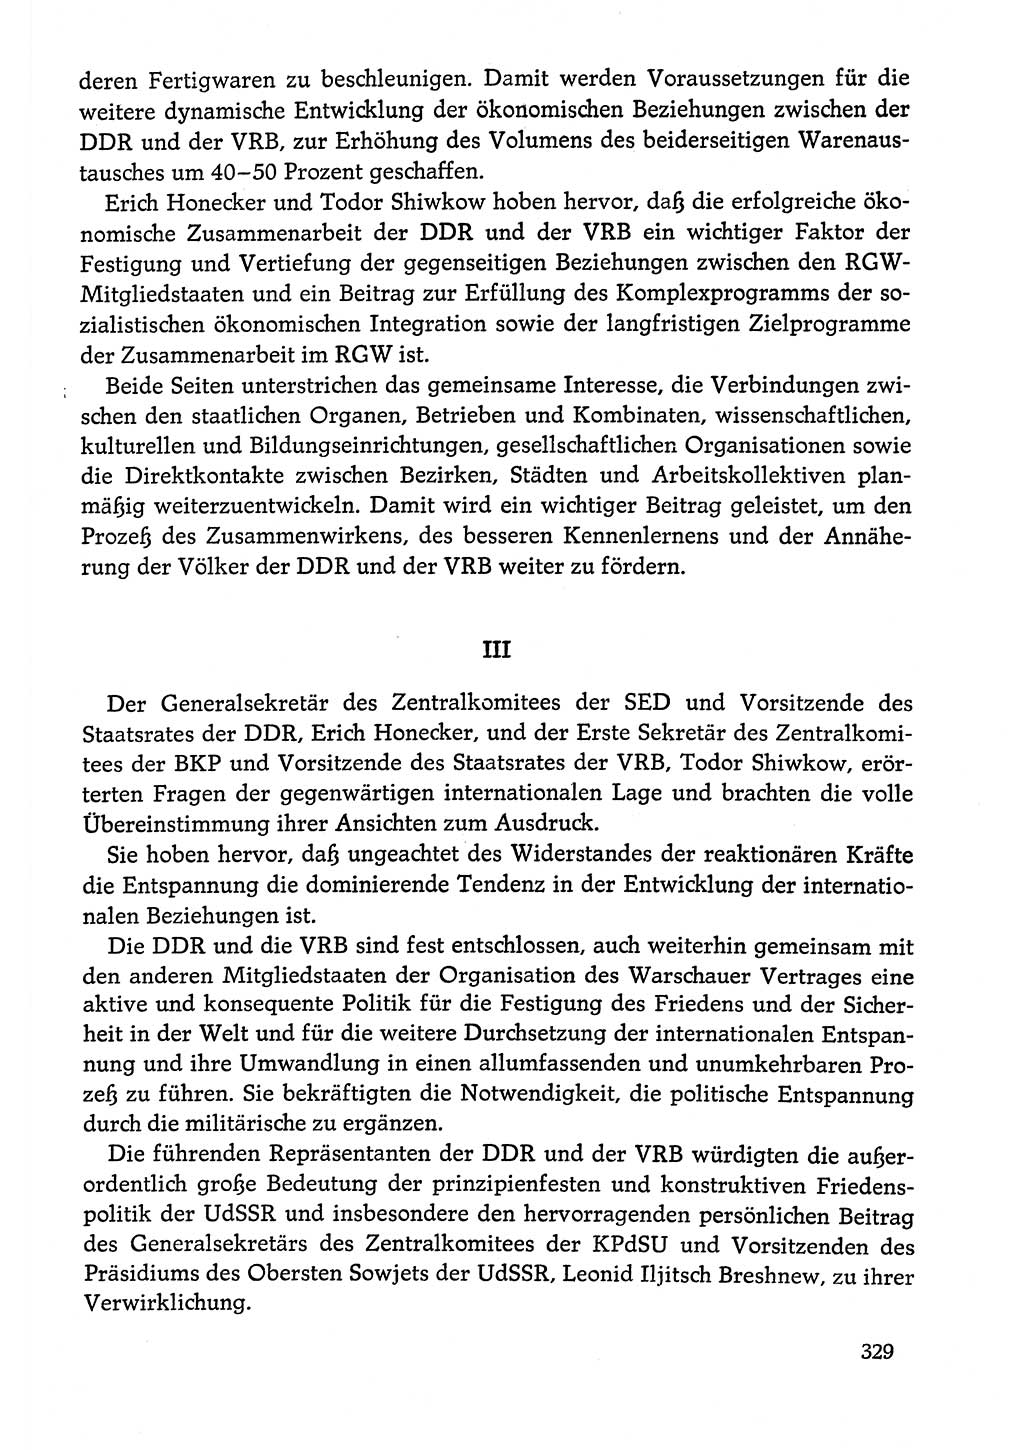 Dokumente der Sozialistischen Einheitspartei Deutschlands (SED) [Deutsche Demokratische Republik (DDR)] 1978-1979, Seite 329 (Dok. SED DDR 1978-1979, S. 329)